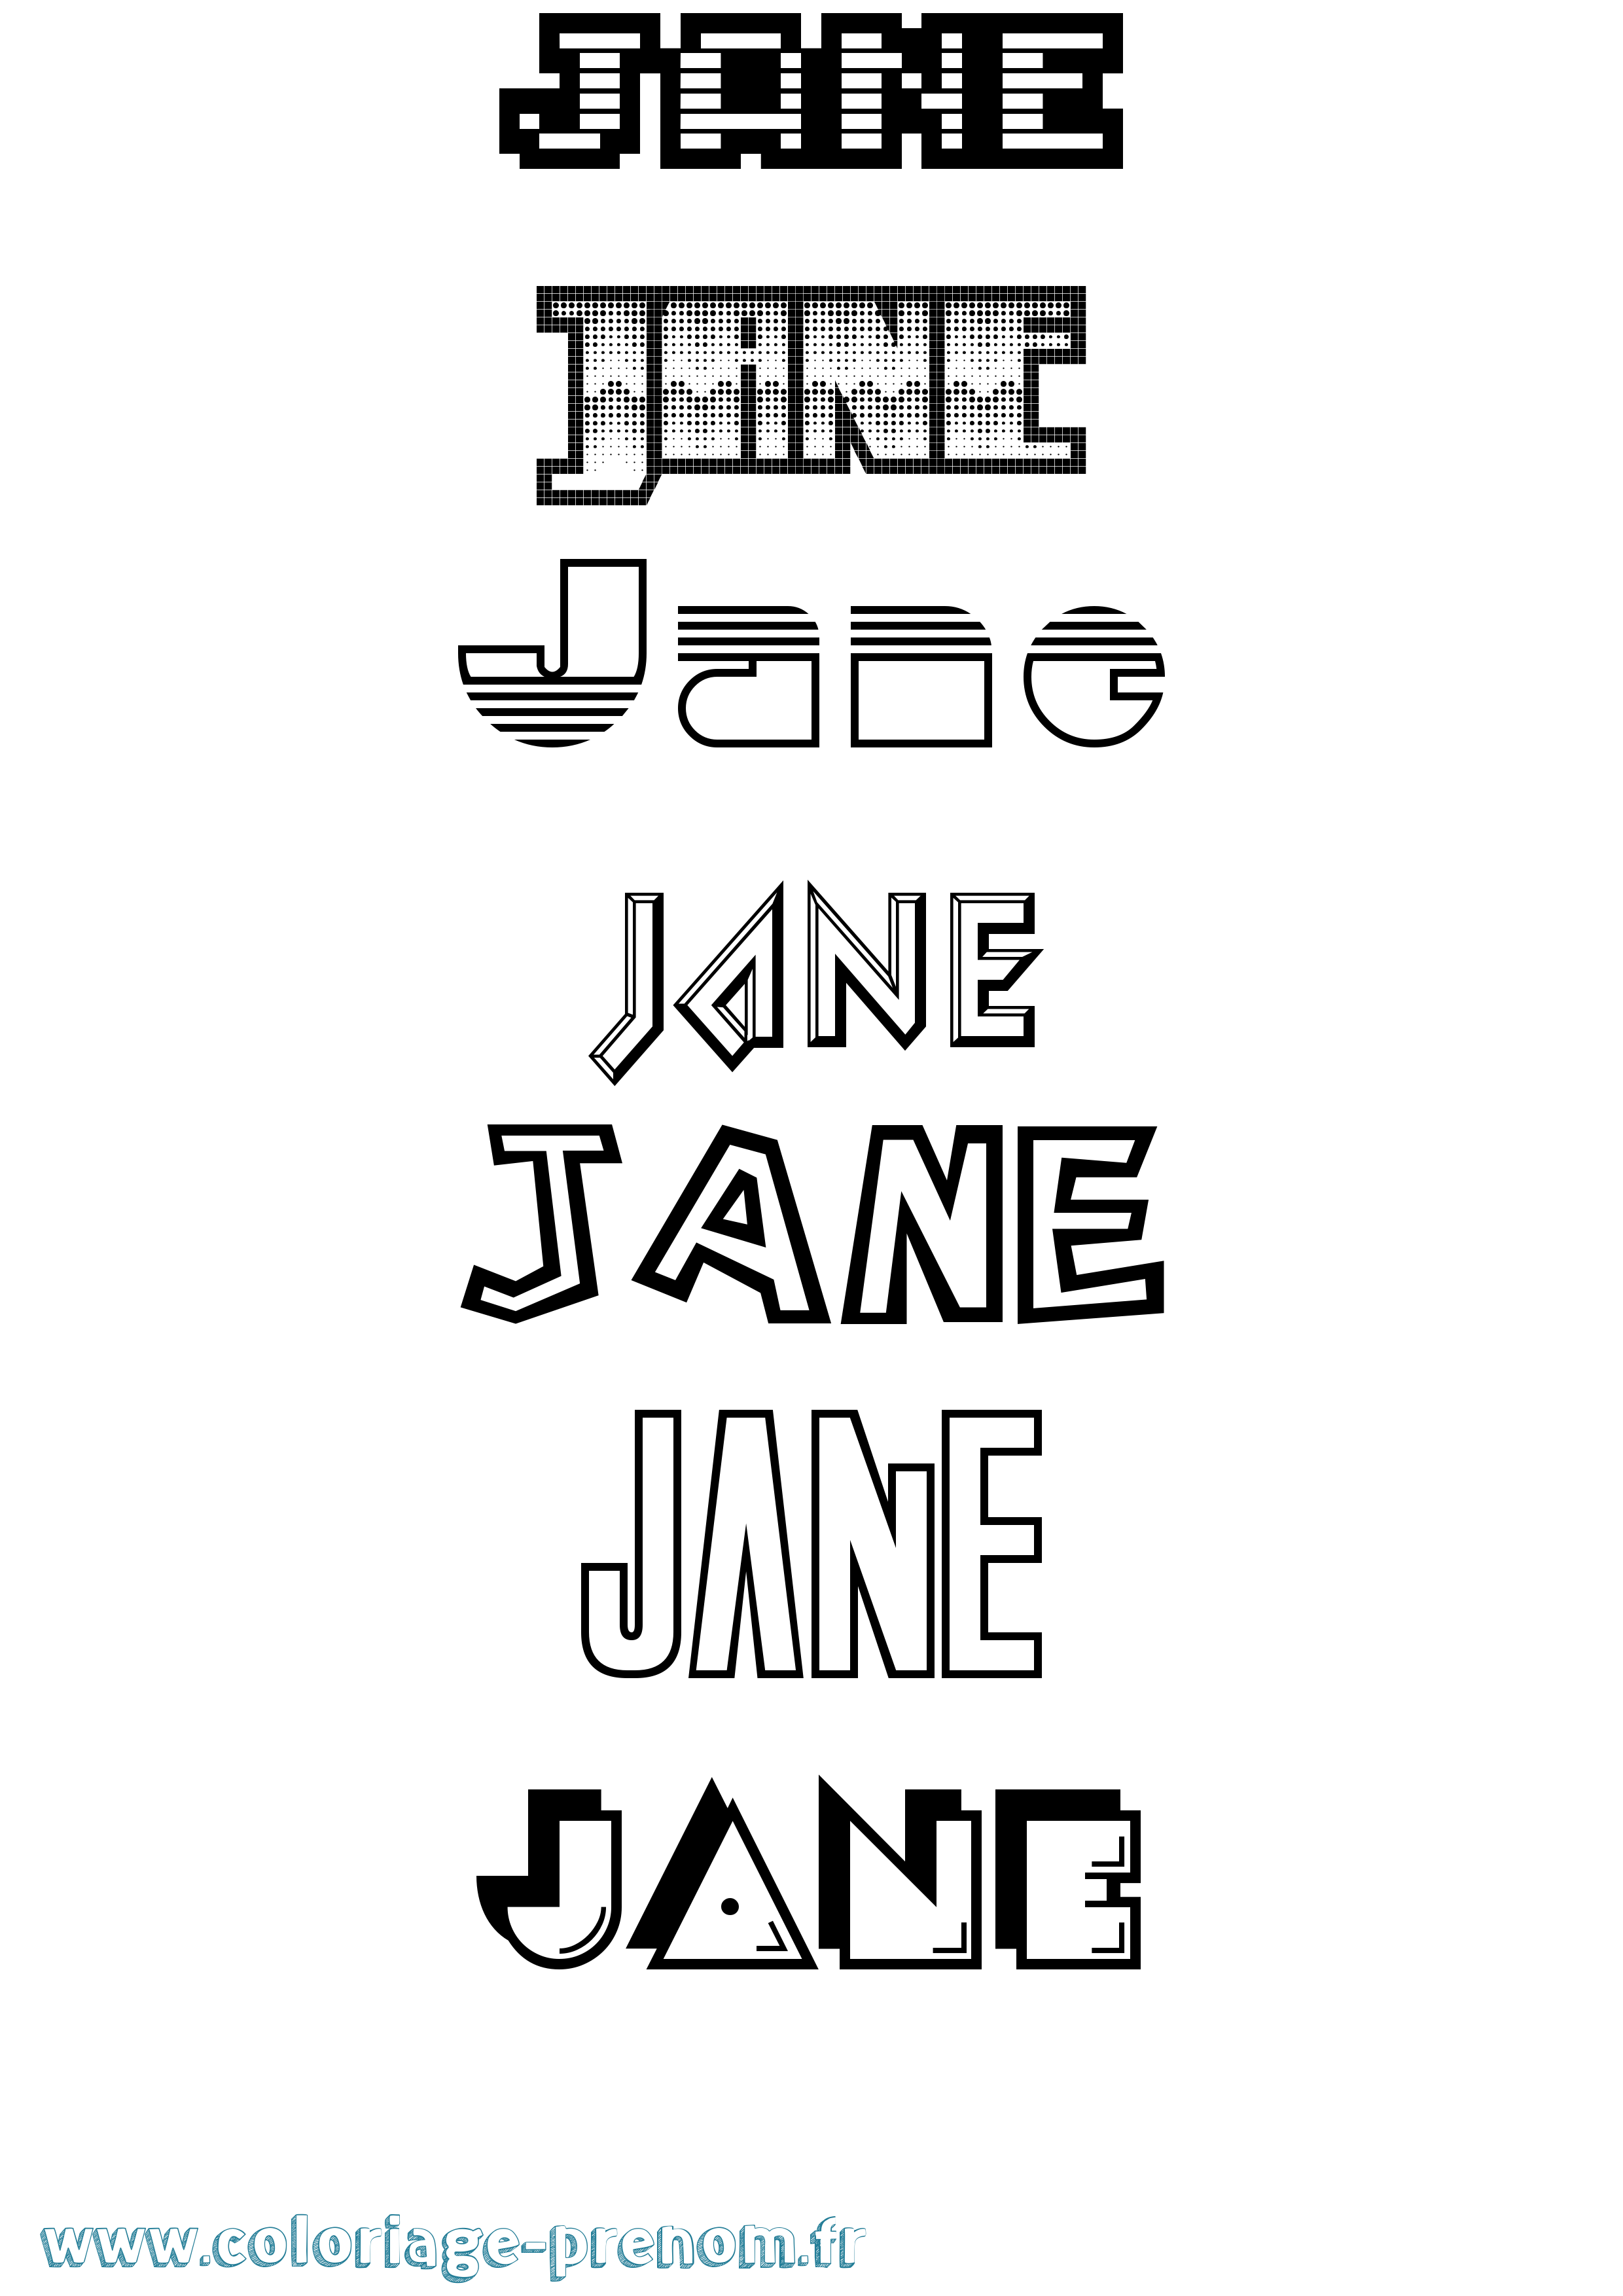 Coloriage prénom Jane Jeux Vidéos